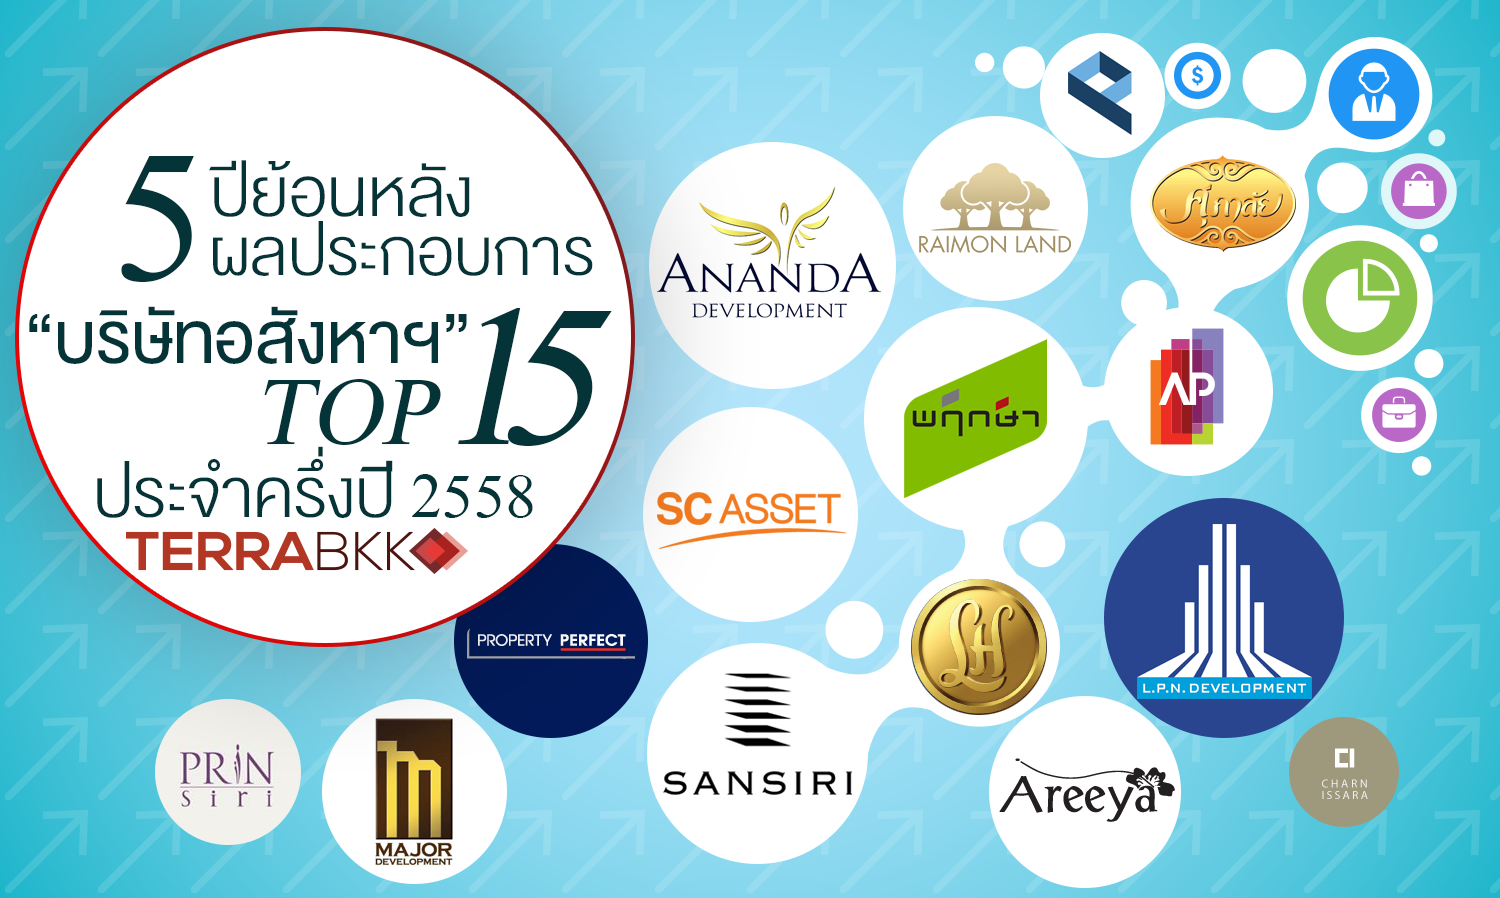 5 ปีย้อนหลังผลประกอบการ “บริษัทอสังหาฯ” TOP15 ประจำครึ่งปี 2558